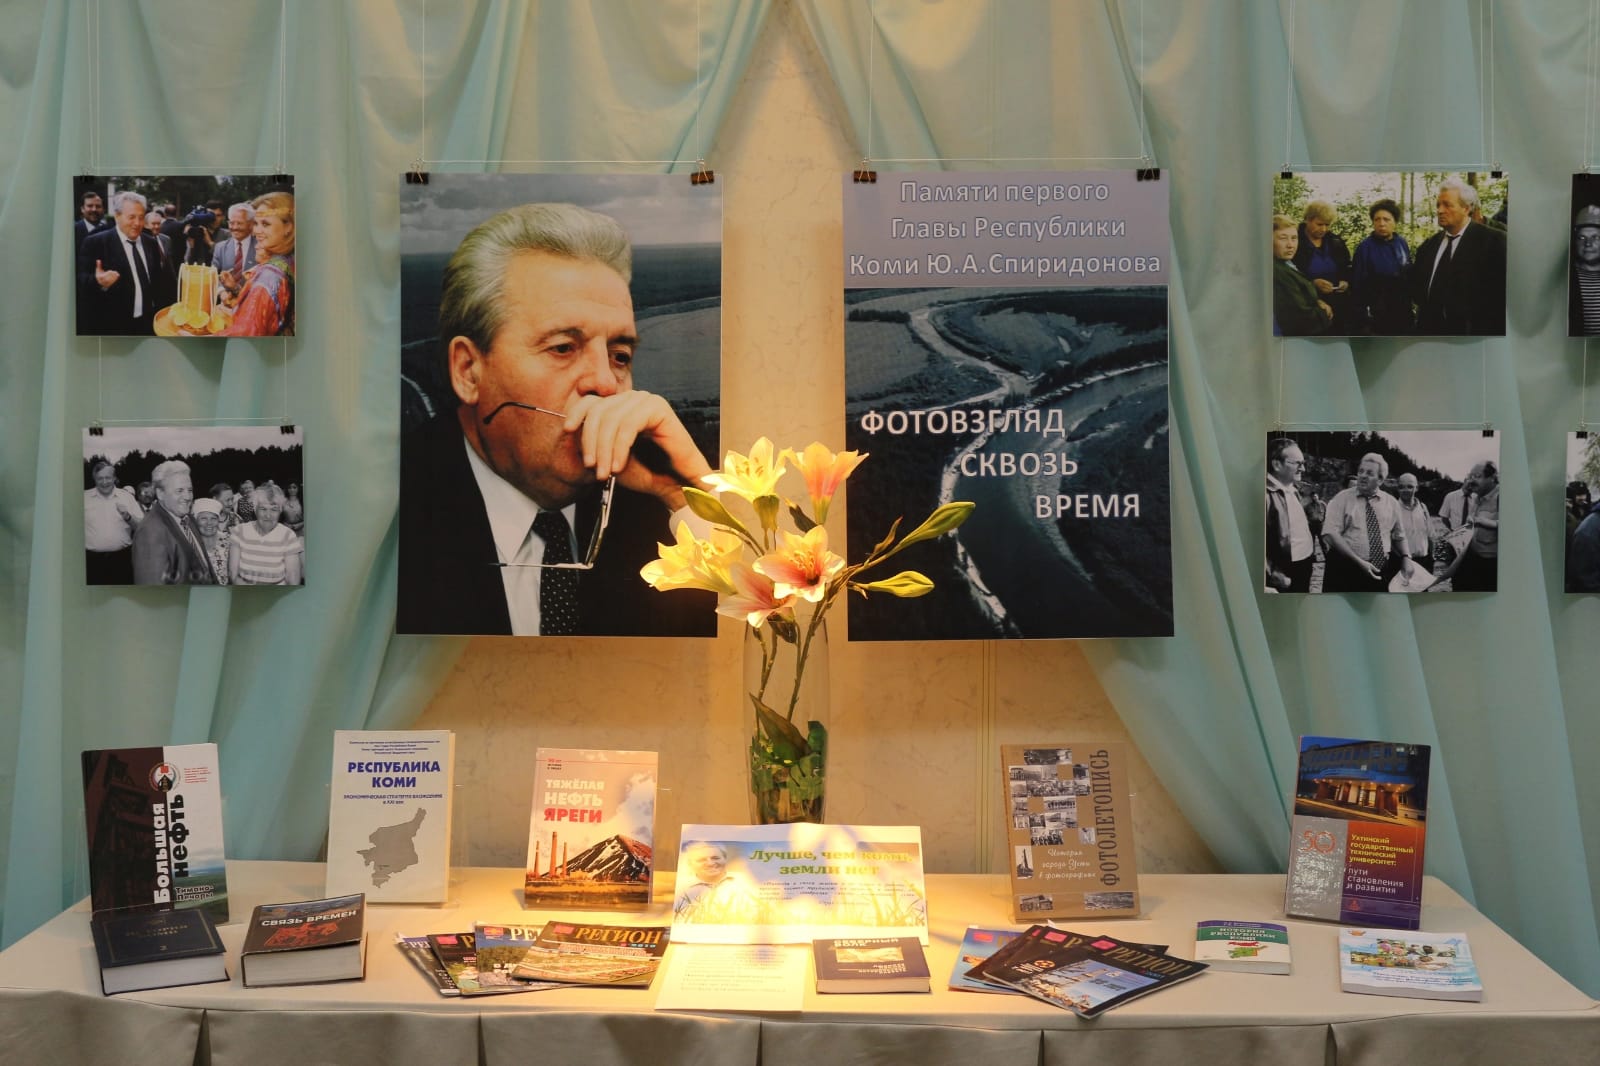 Вечер памяти, посвященный 85-летию со Дня рождения  Ю.А. Спиридонова.